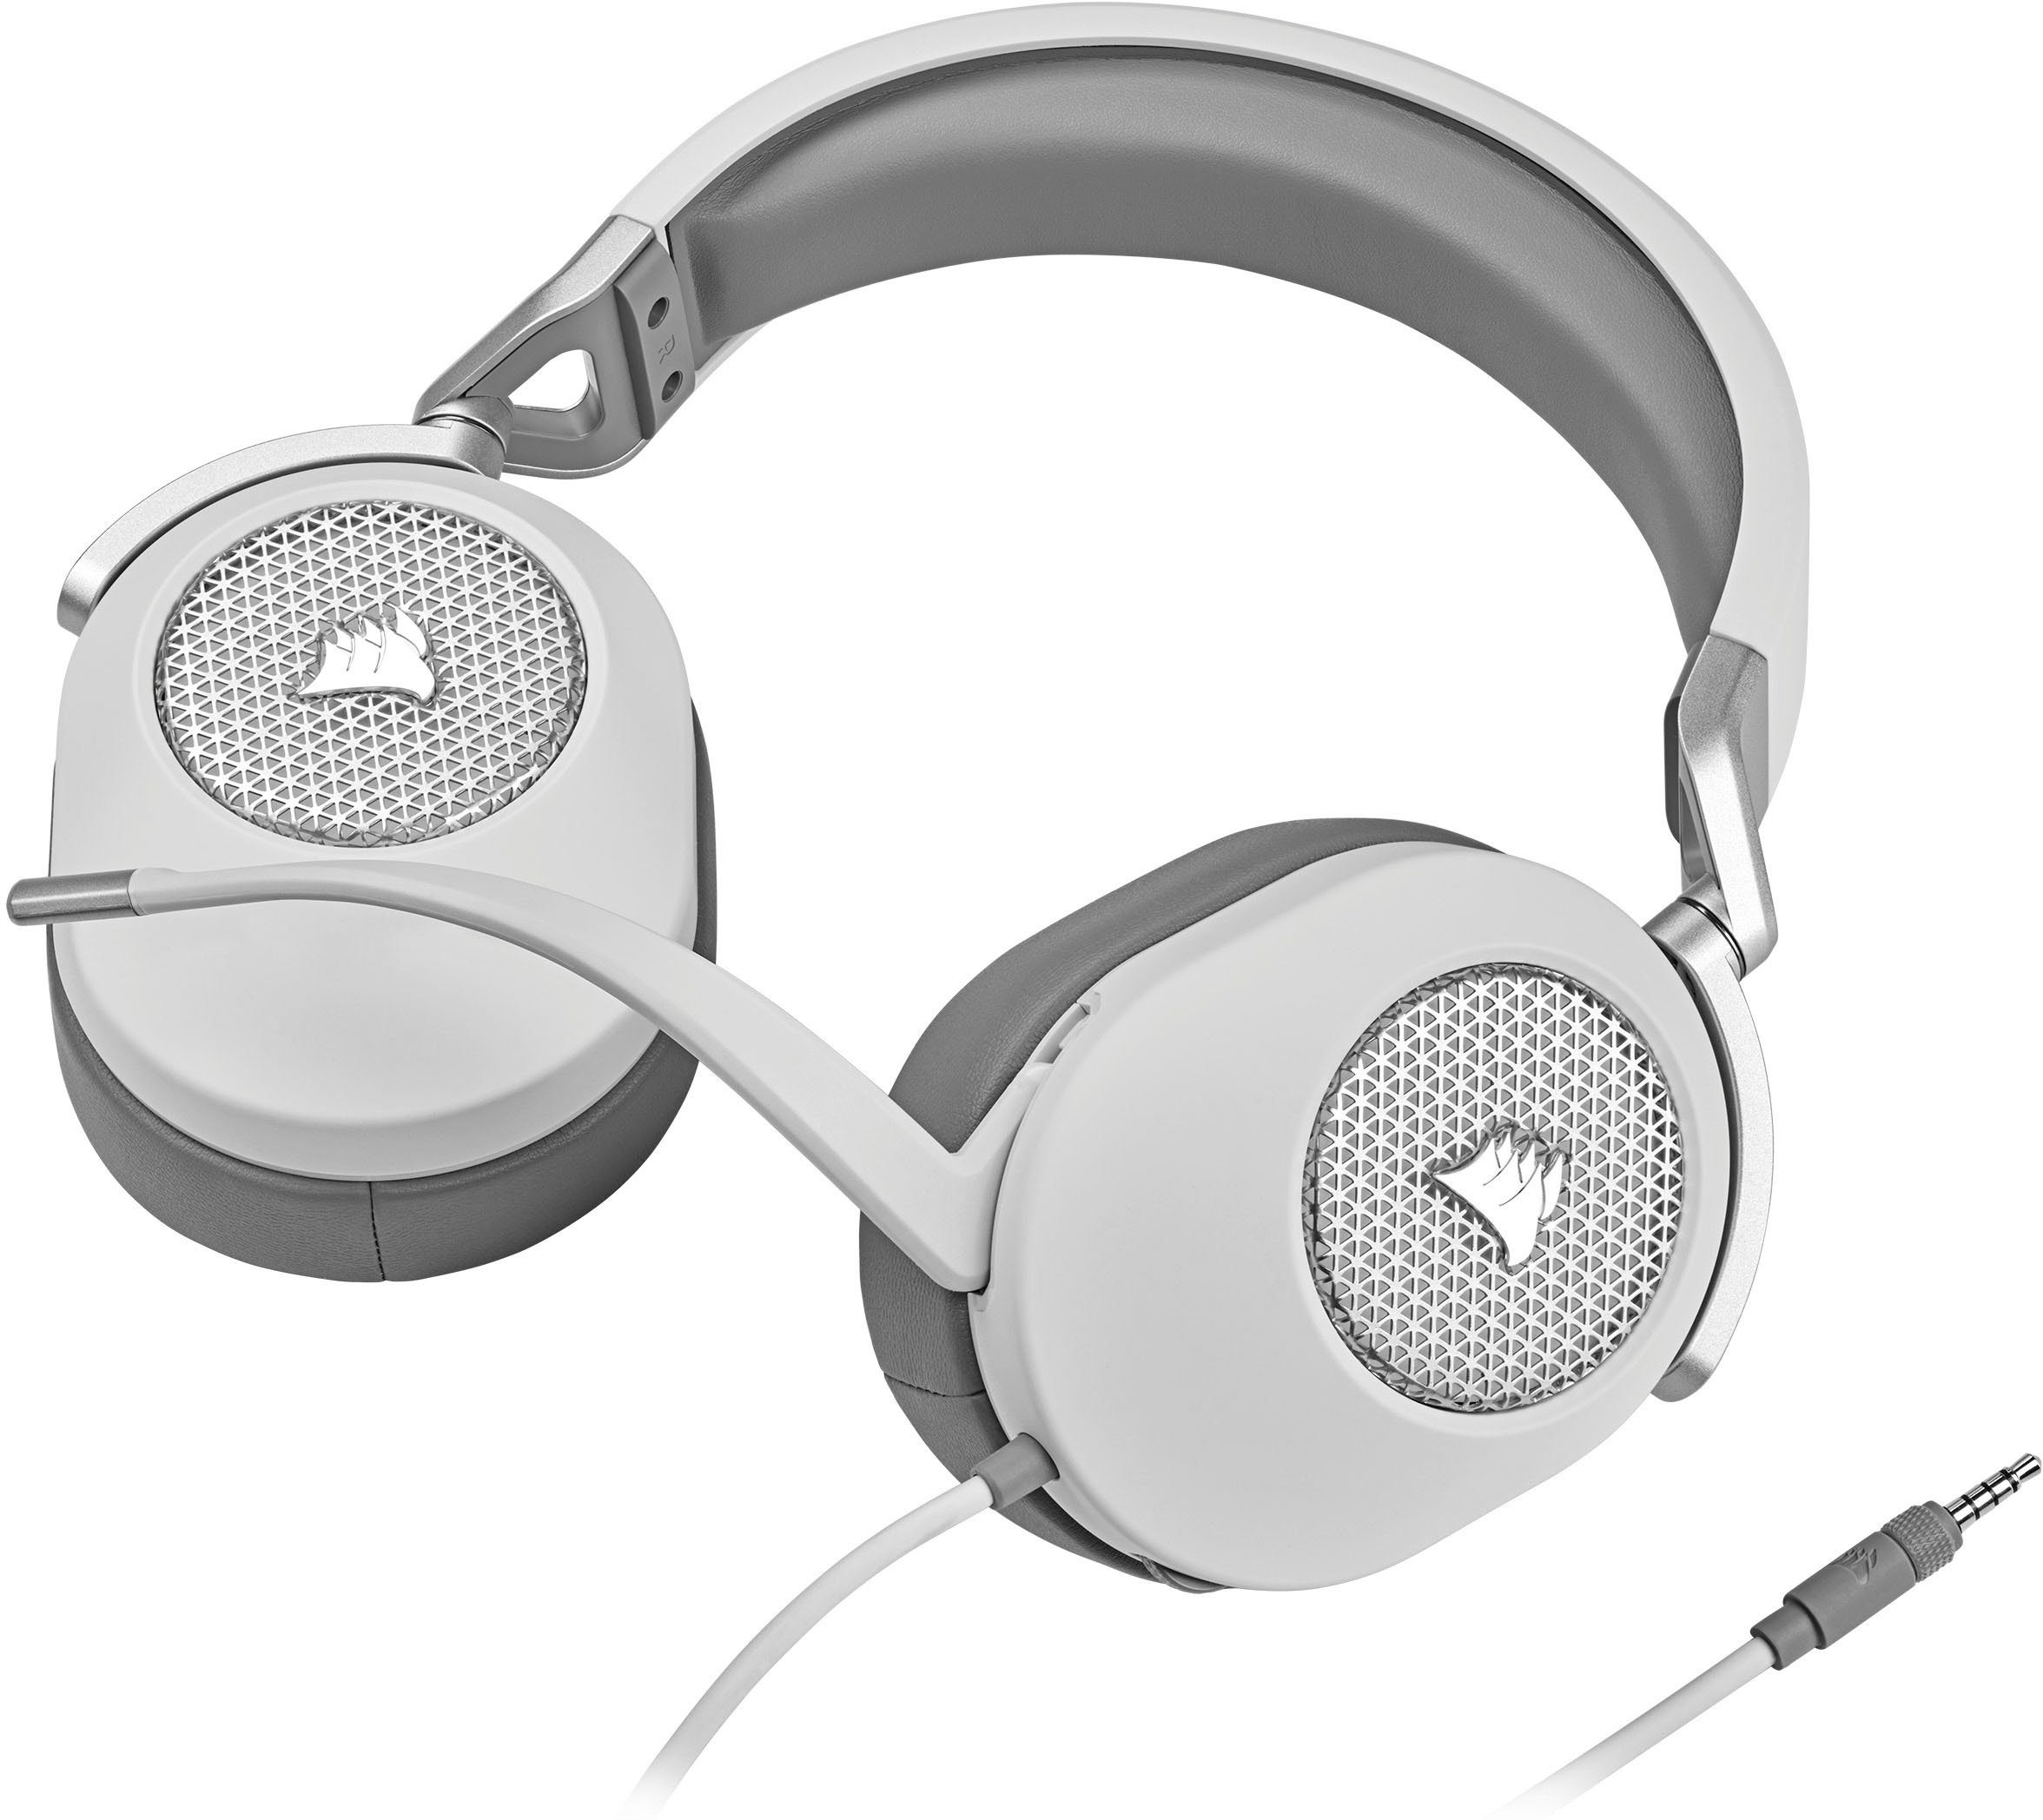 Günstig und beliebt Corsair HS65 Gaming-Headset weiß (SURROUND)